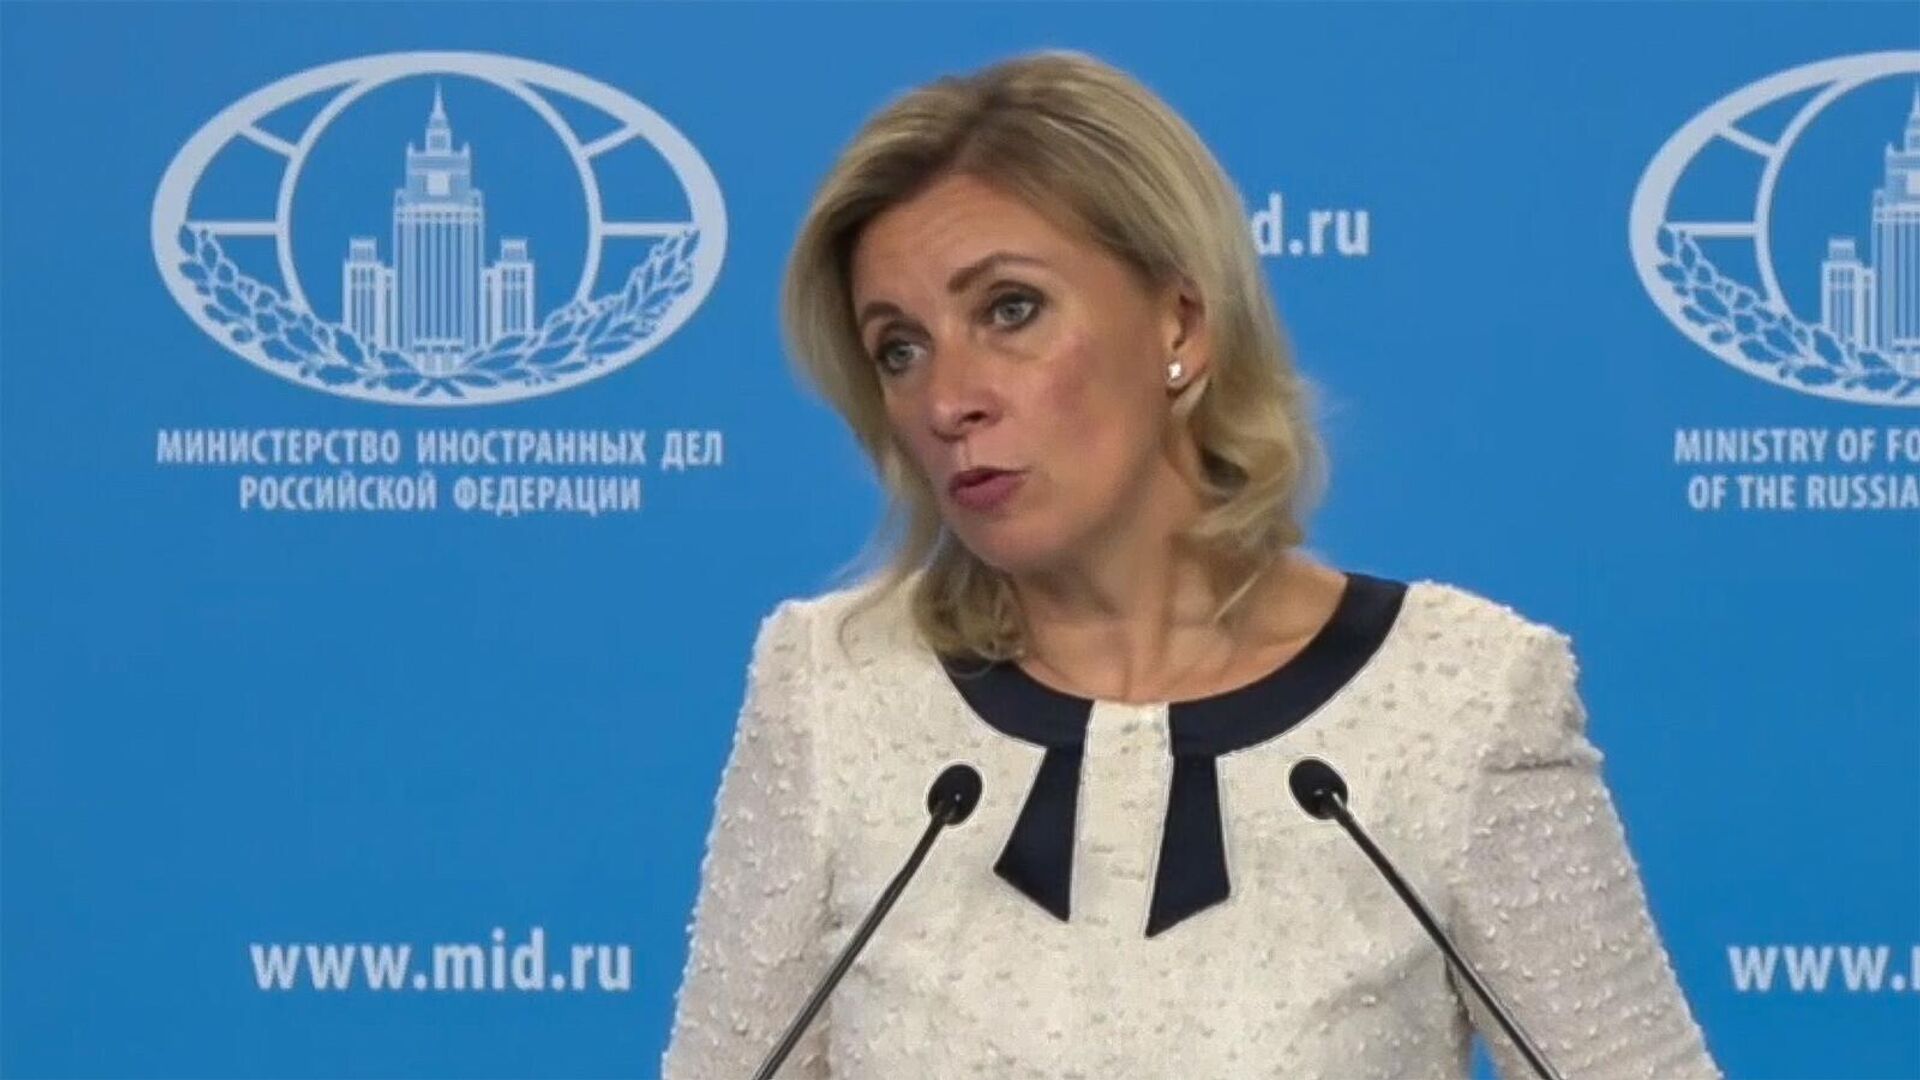 Захарова заявила, что не понимает логики и стилистики заявления о «замораживании» участия Армении в ОДКБ